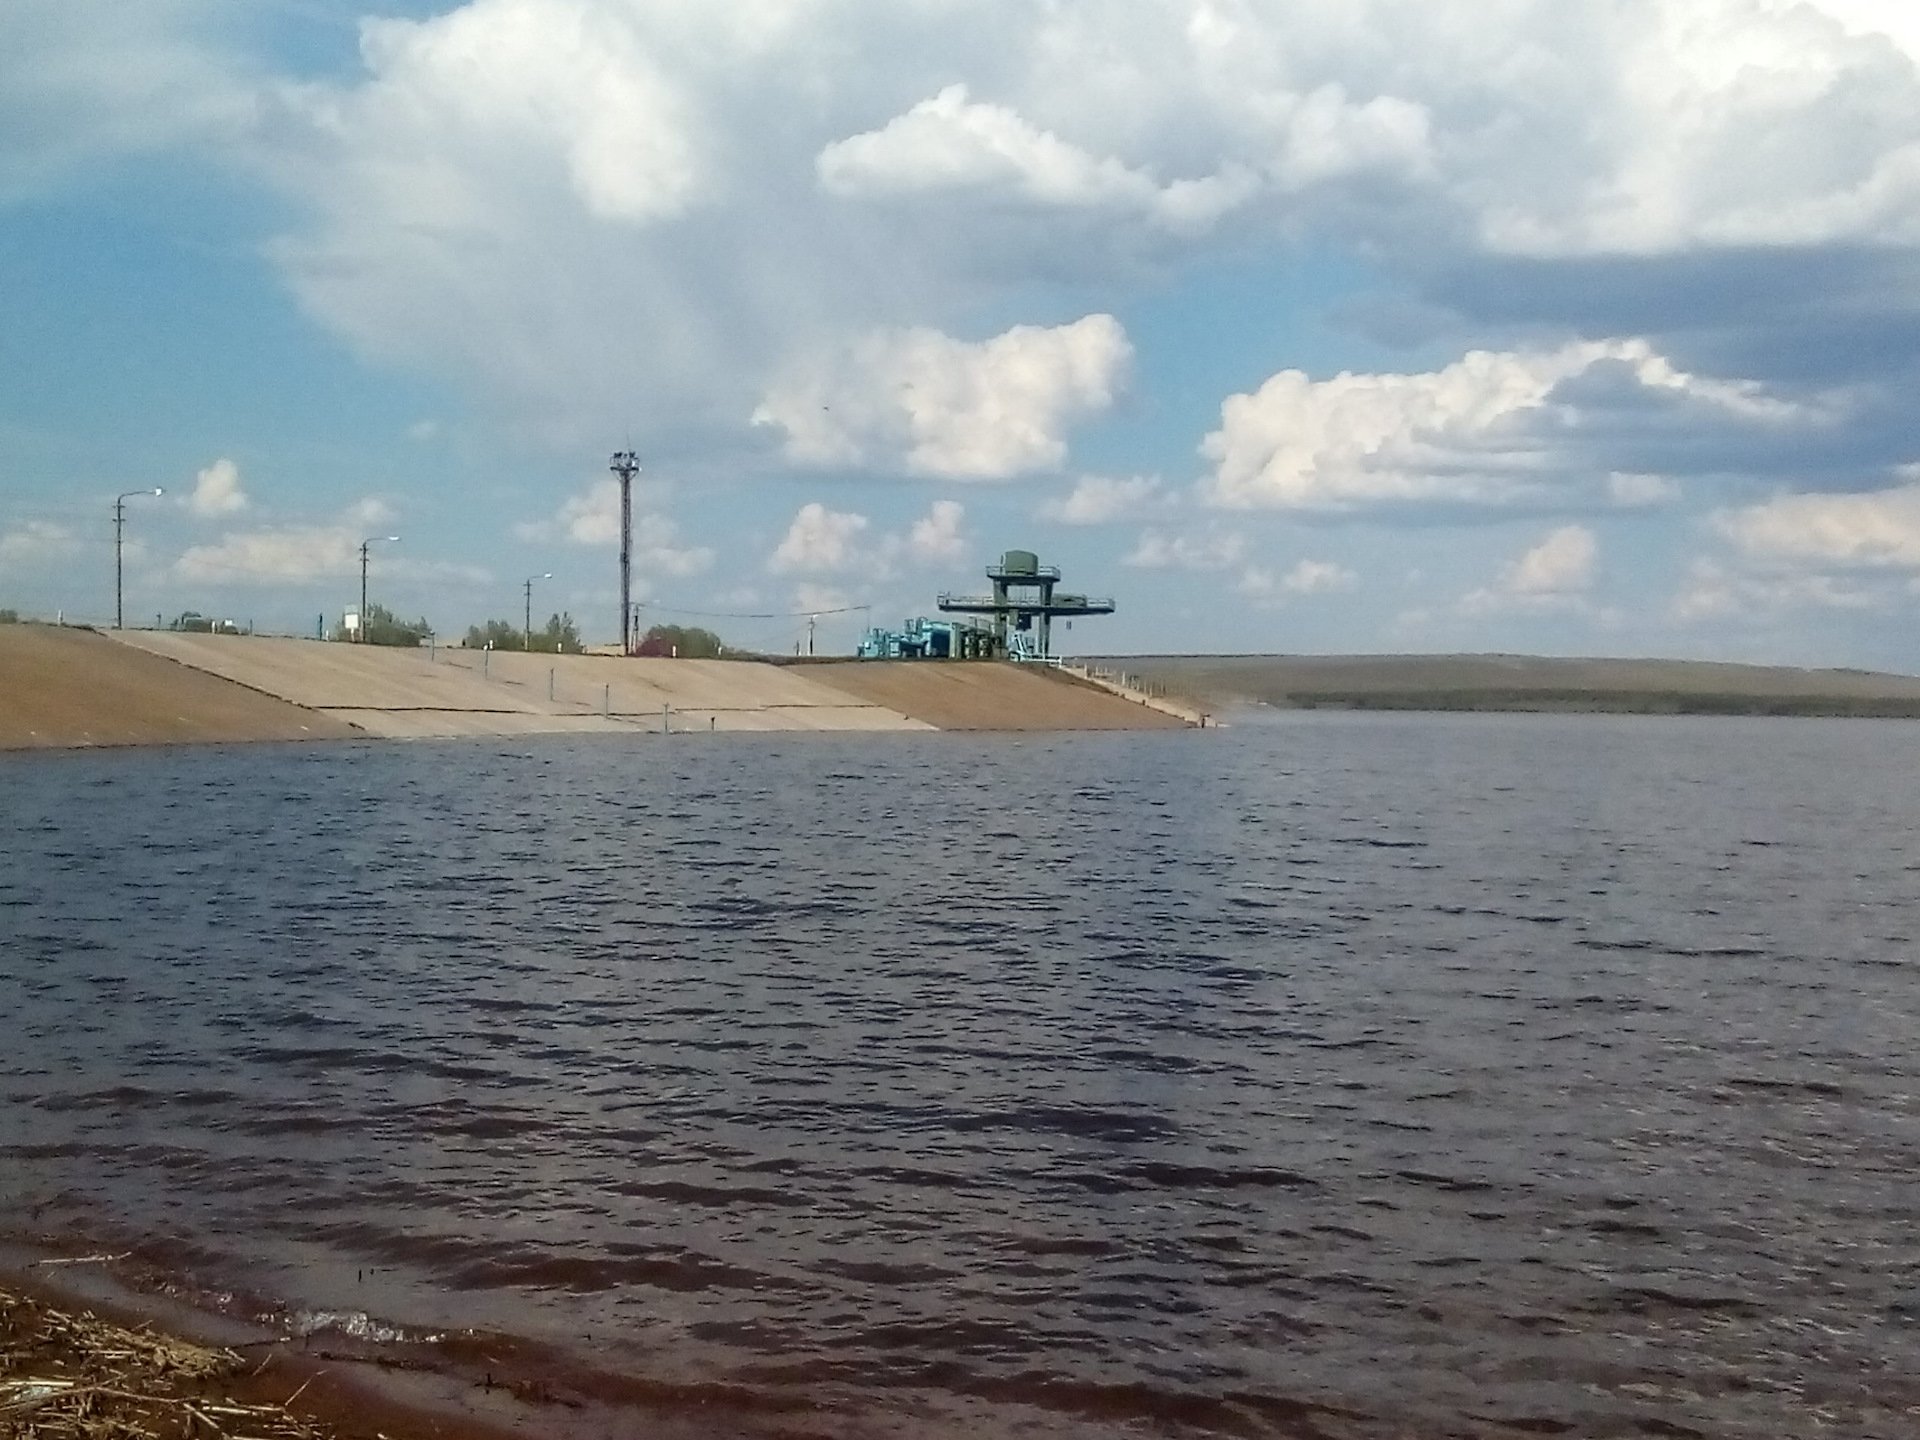 Сайт сорочинского водохранилища оренбургской области